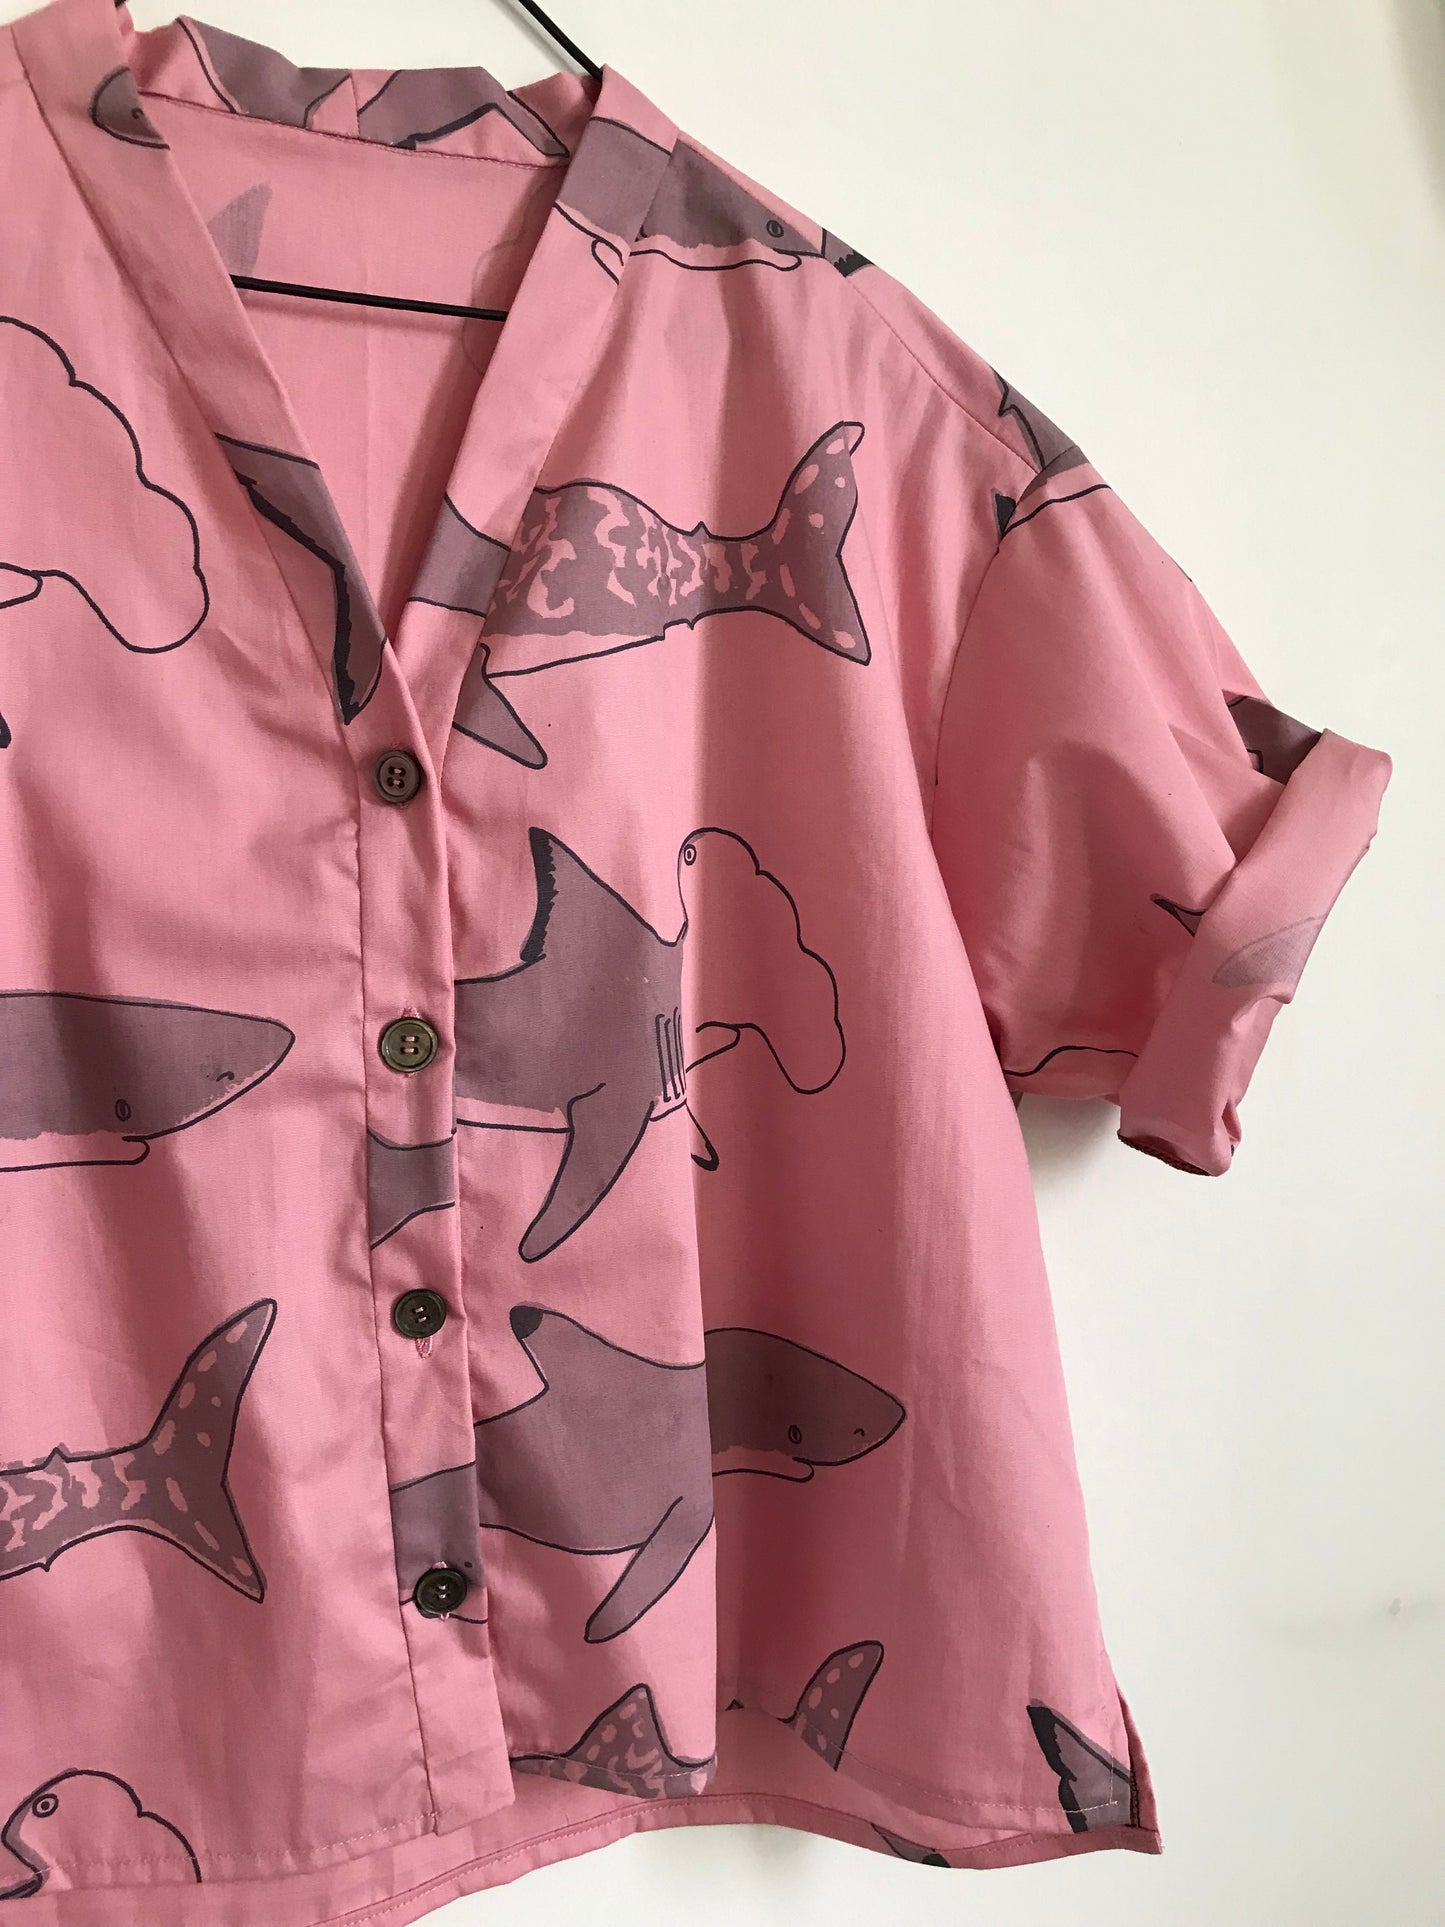 Shirtlet Shark Medley